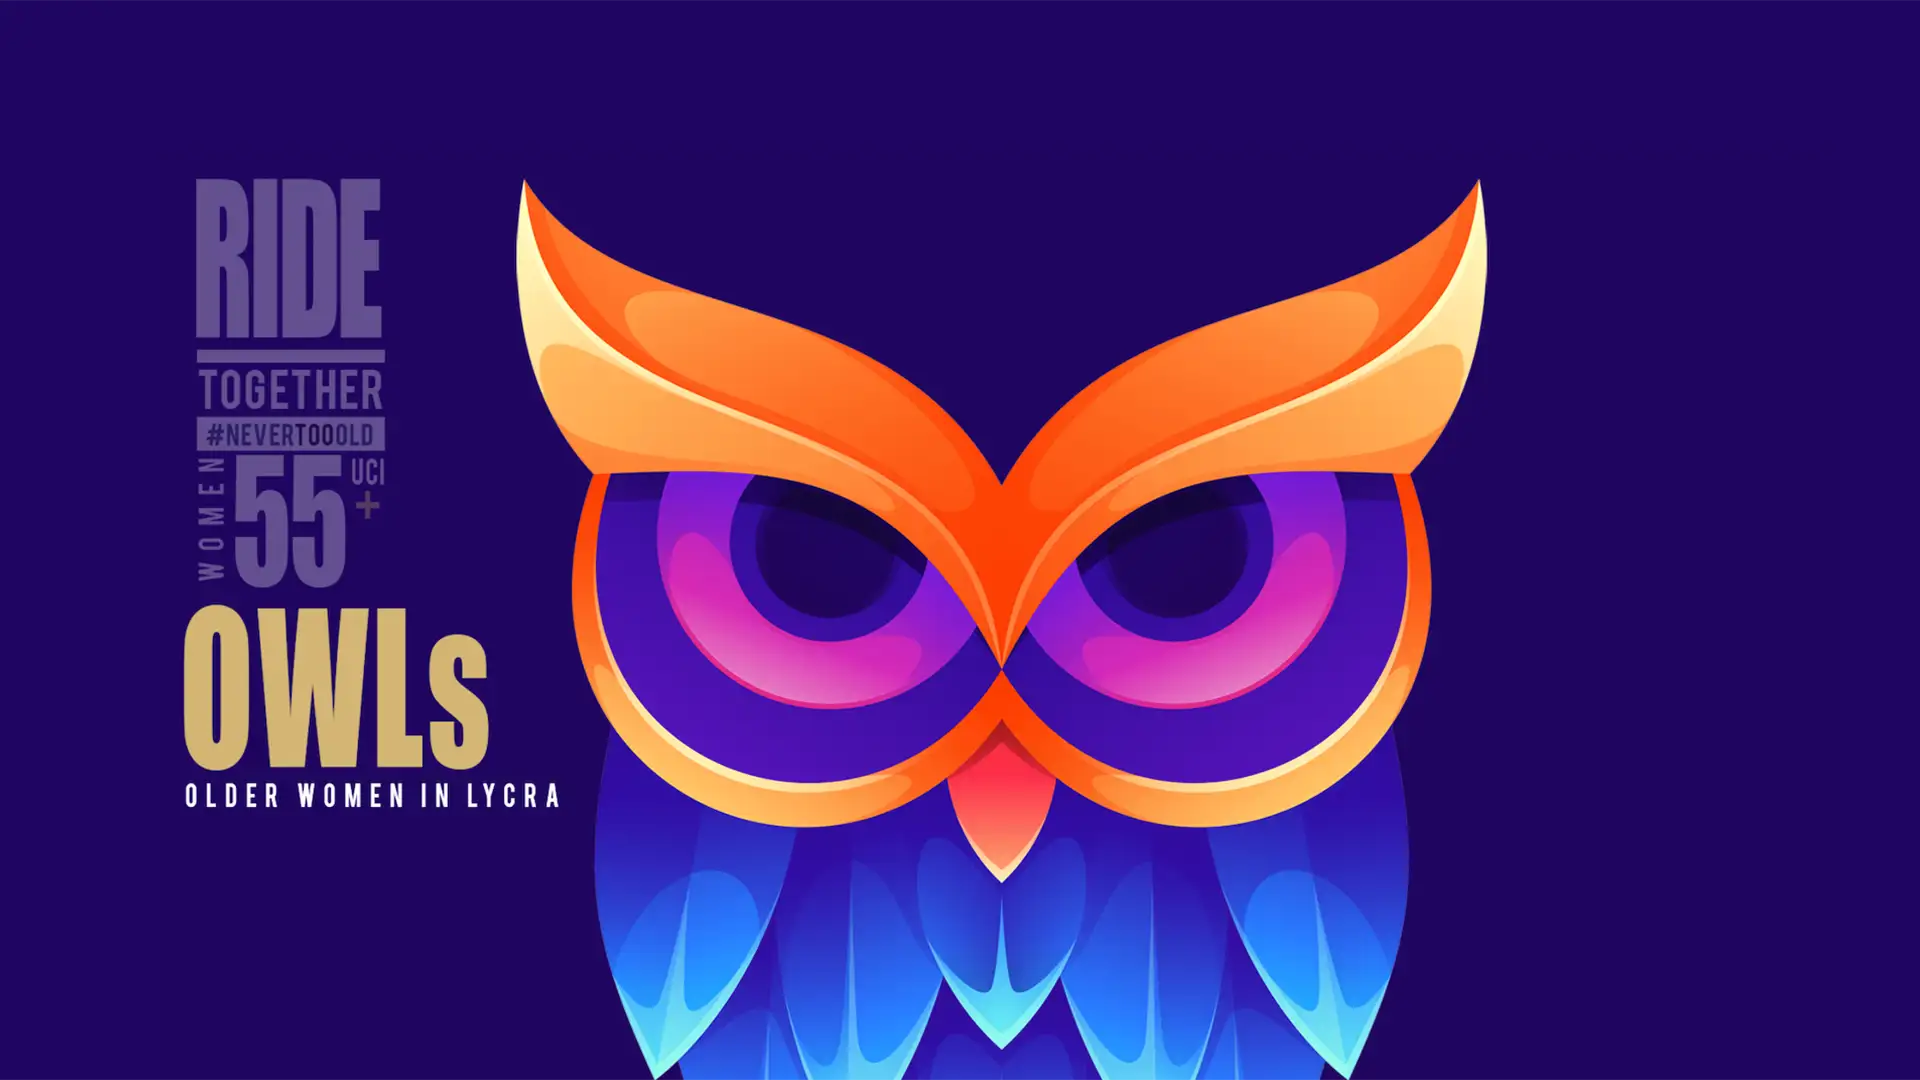 Team OWL website homepage